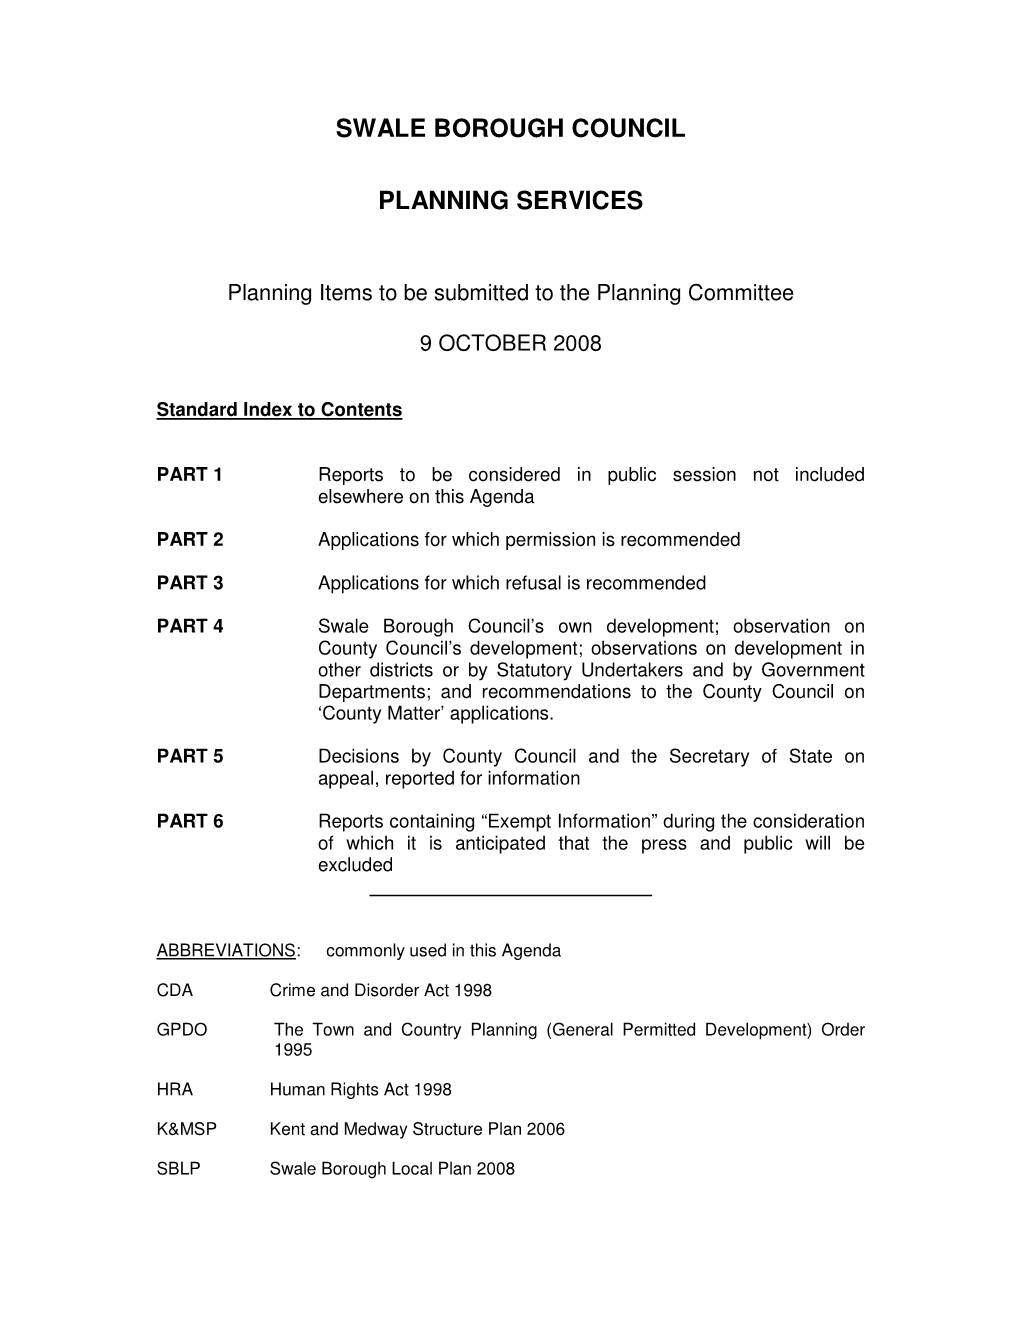 Swale Borough Council Planning Services